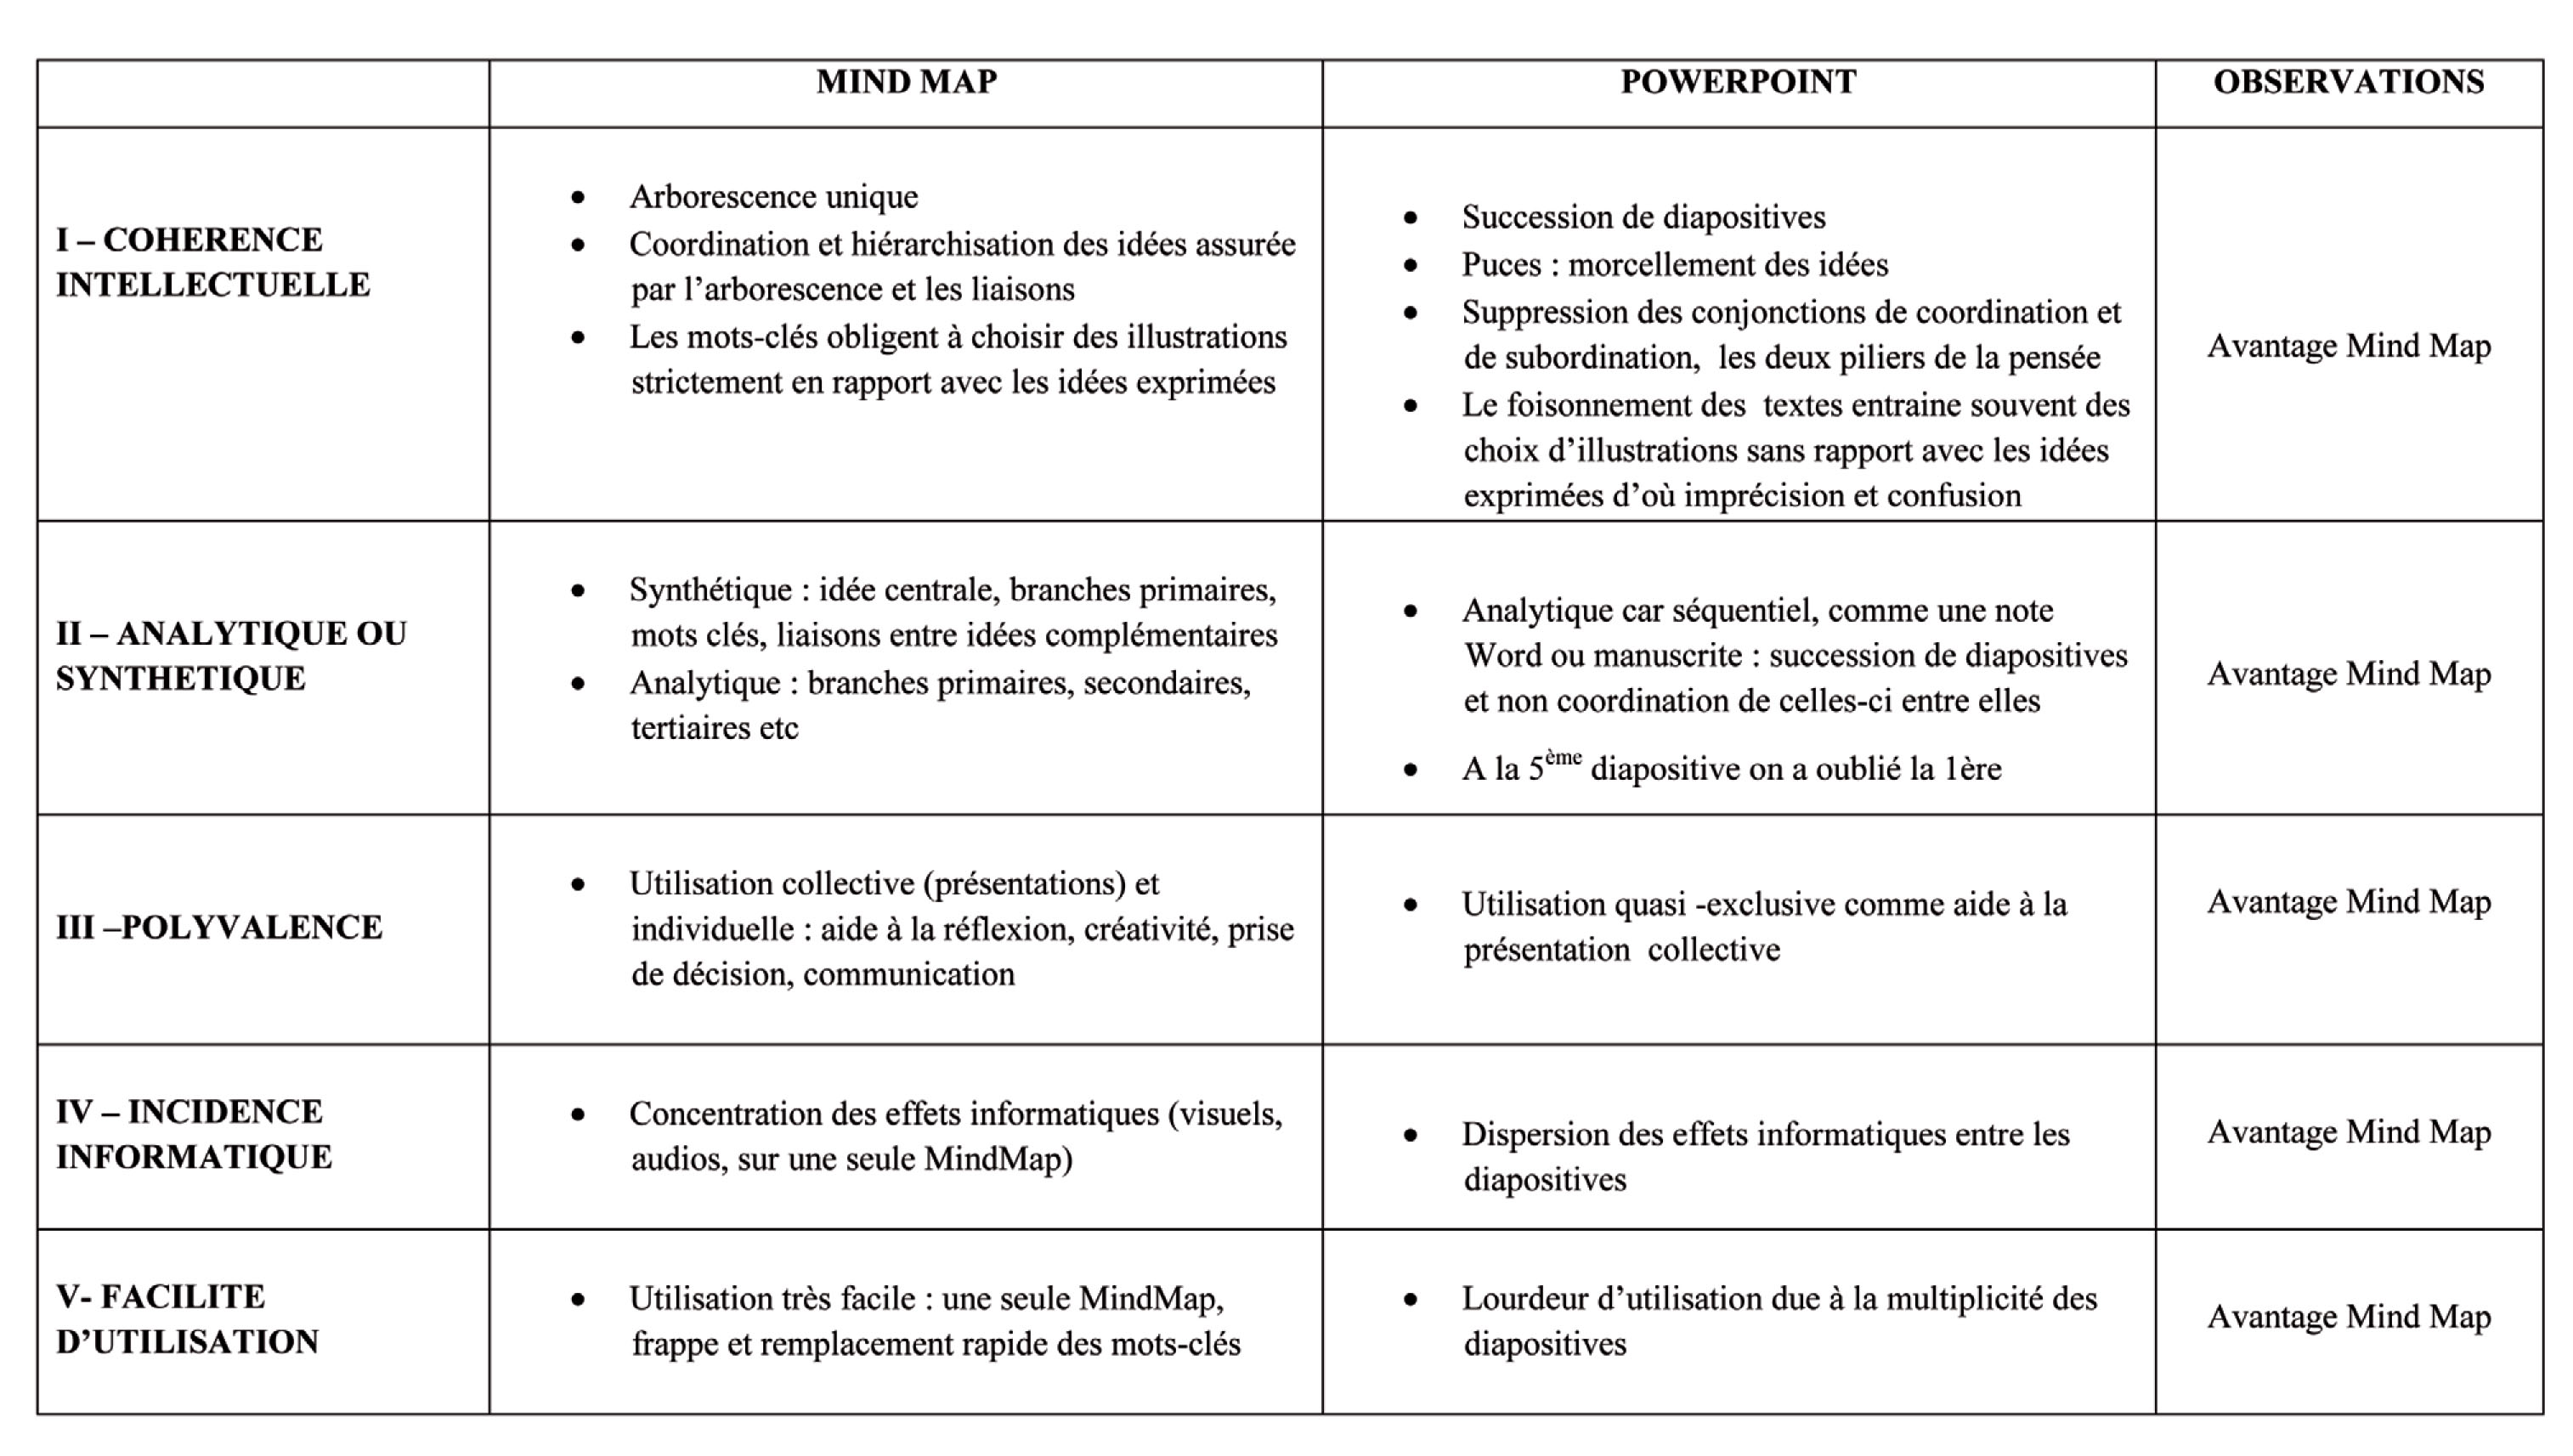 Étude comparée de Powerpoint et de Mindmap